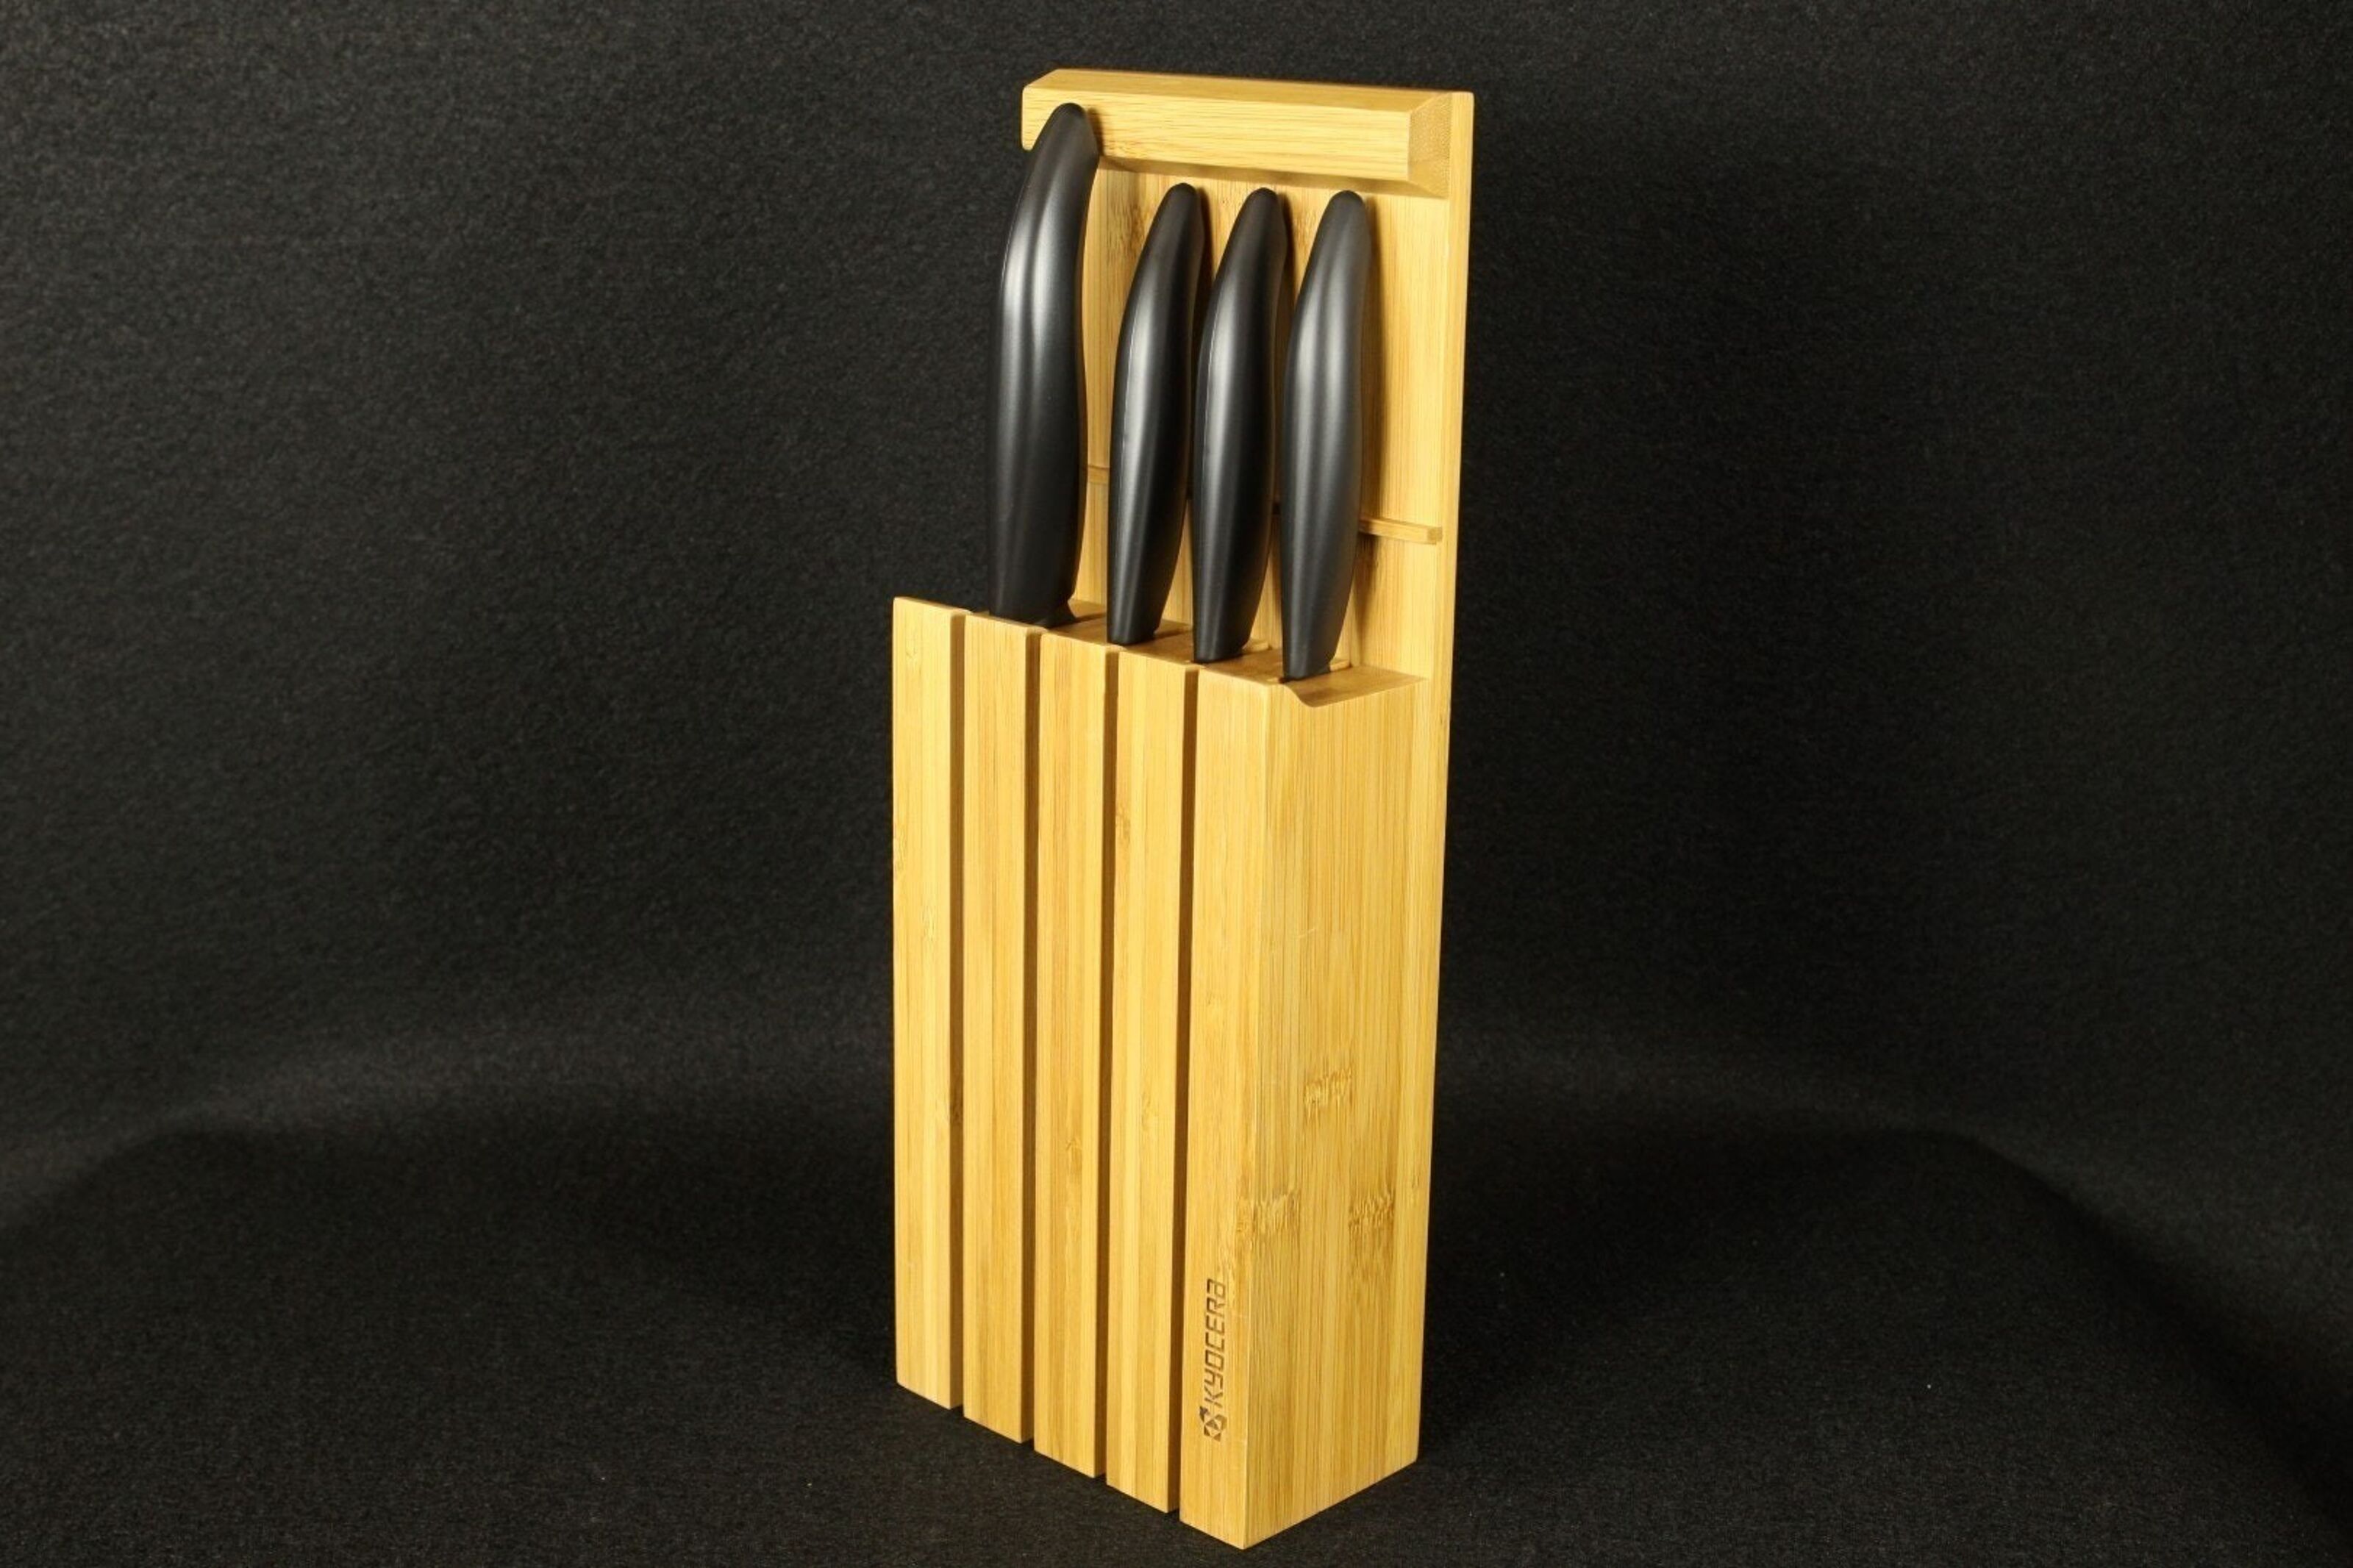 Kaufen Sie Kyocera Bamboo Messerblock Gen Whbk Messerset Zu Großhandelspreisen